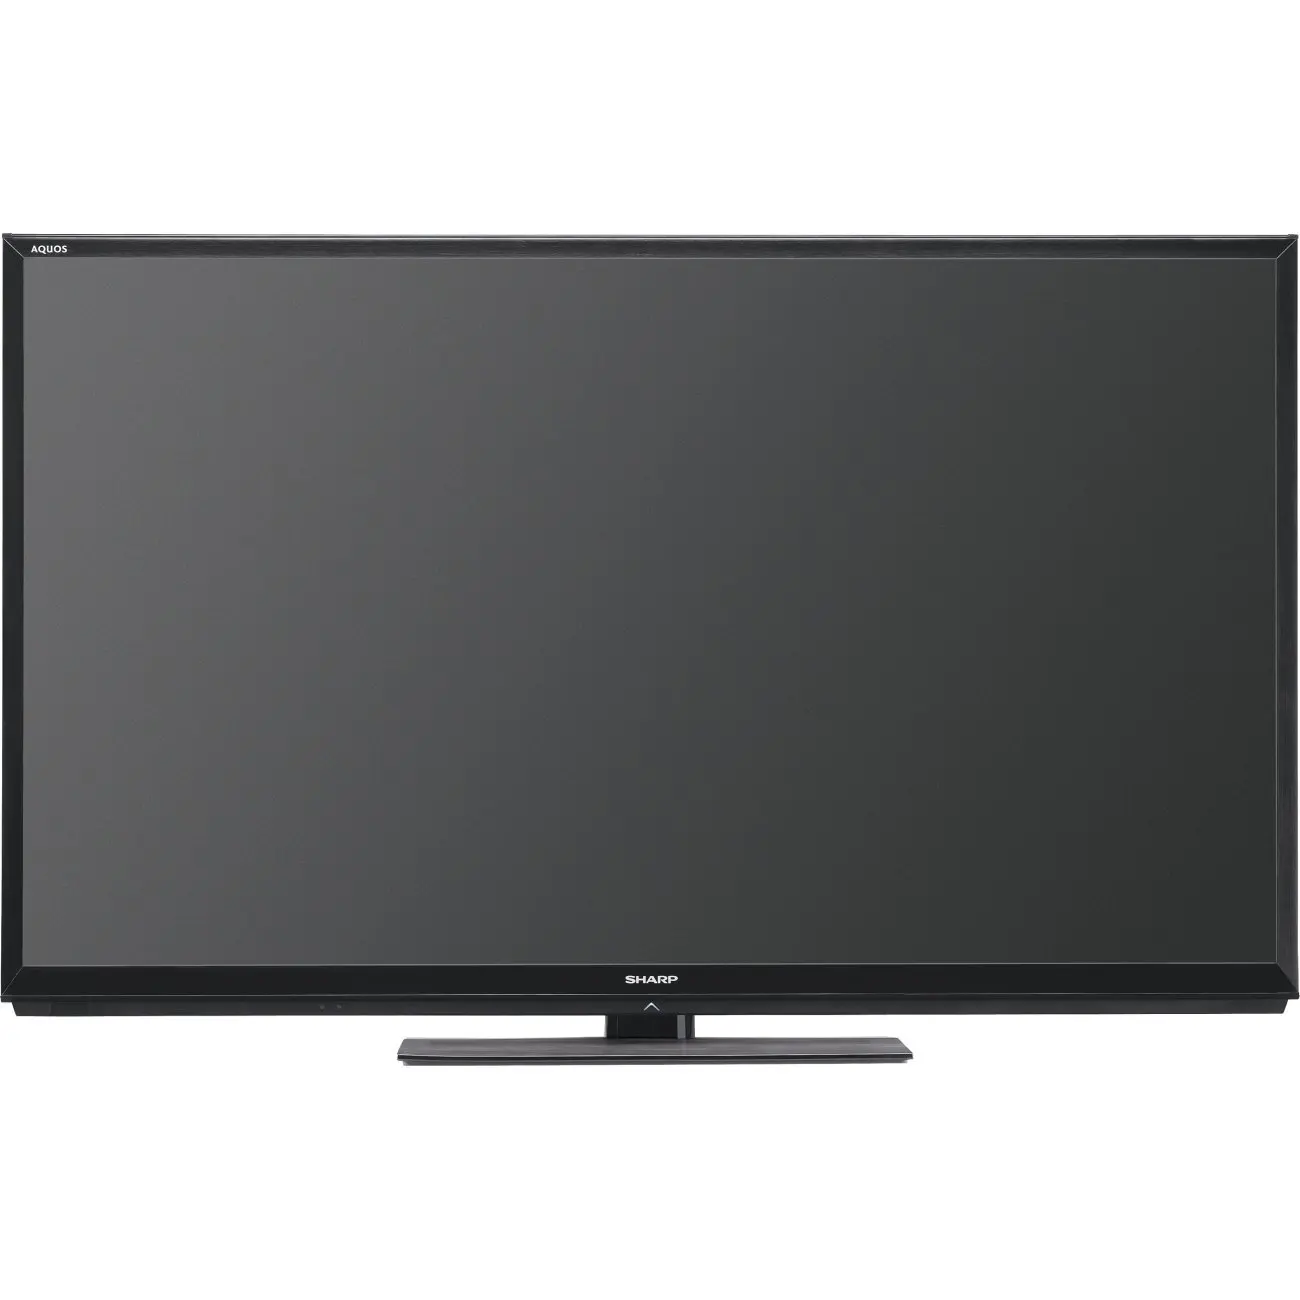 Buy Sharp Aquos Lc60c7450u 60 Inch 1080p 240hz 3d 1080p Led Lcd Tv In